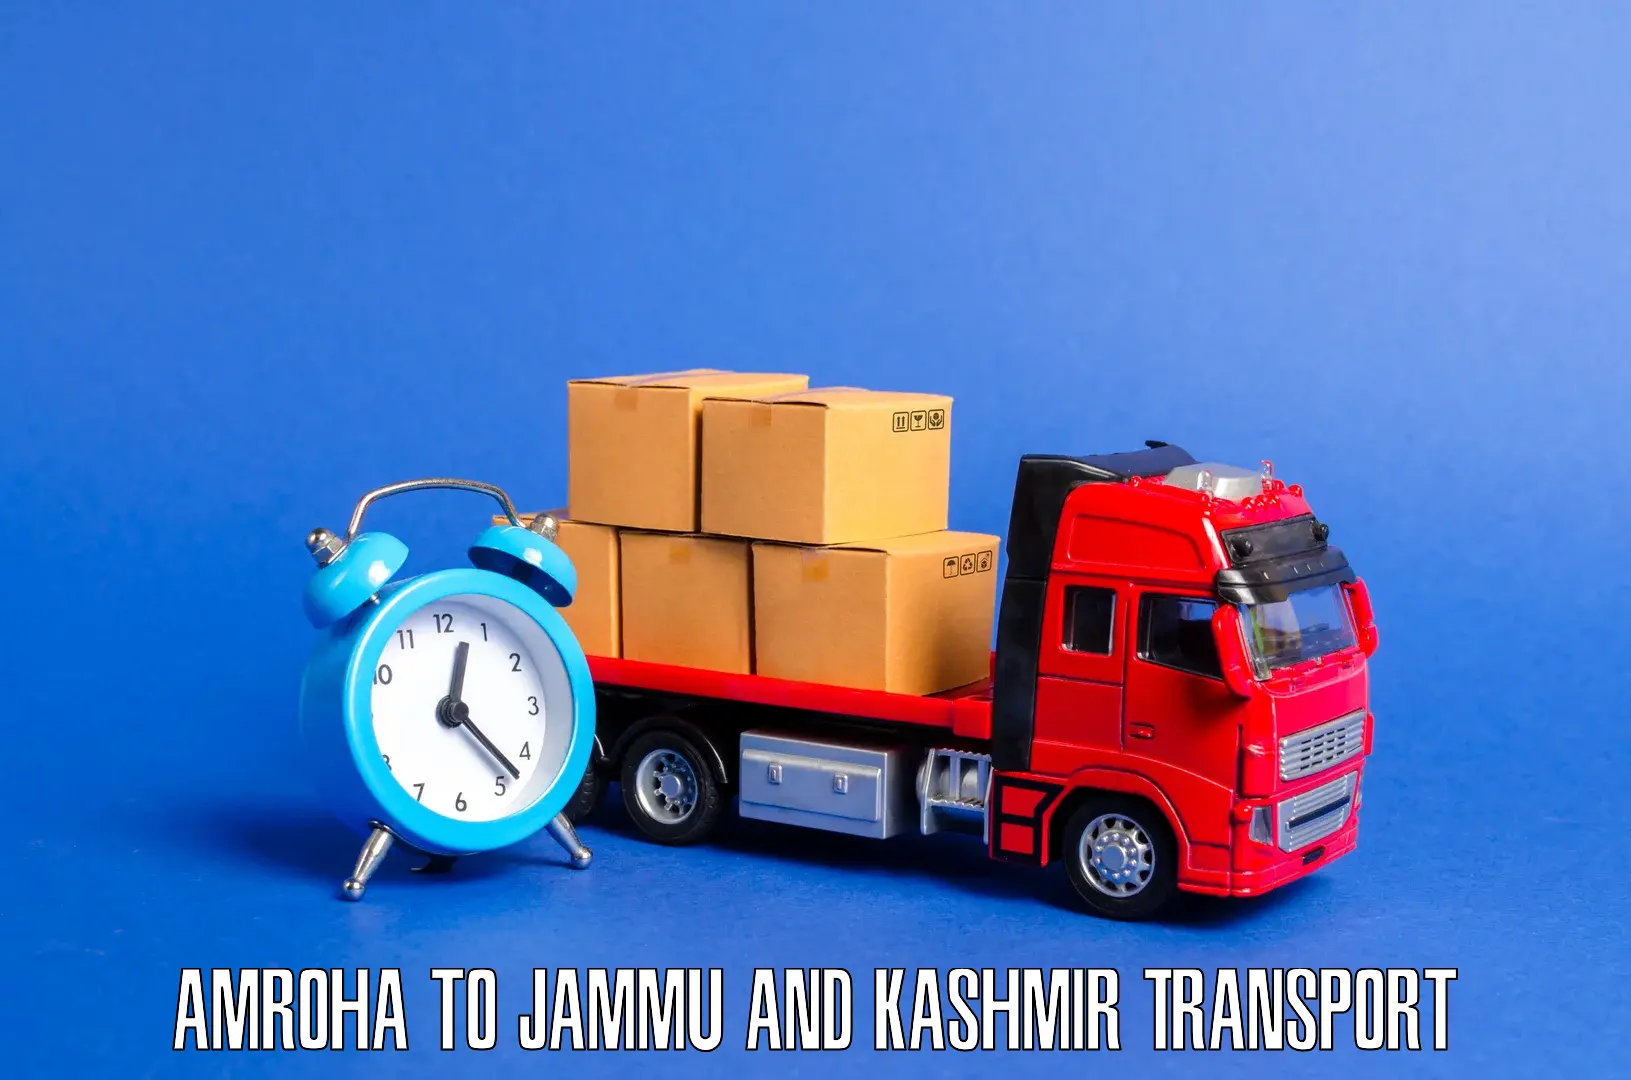 Bike transport service in Amroha to Jammu